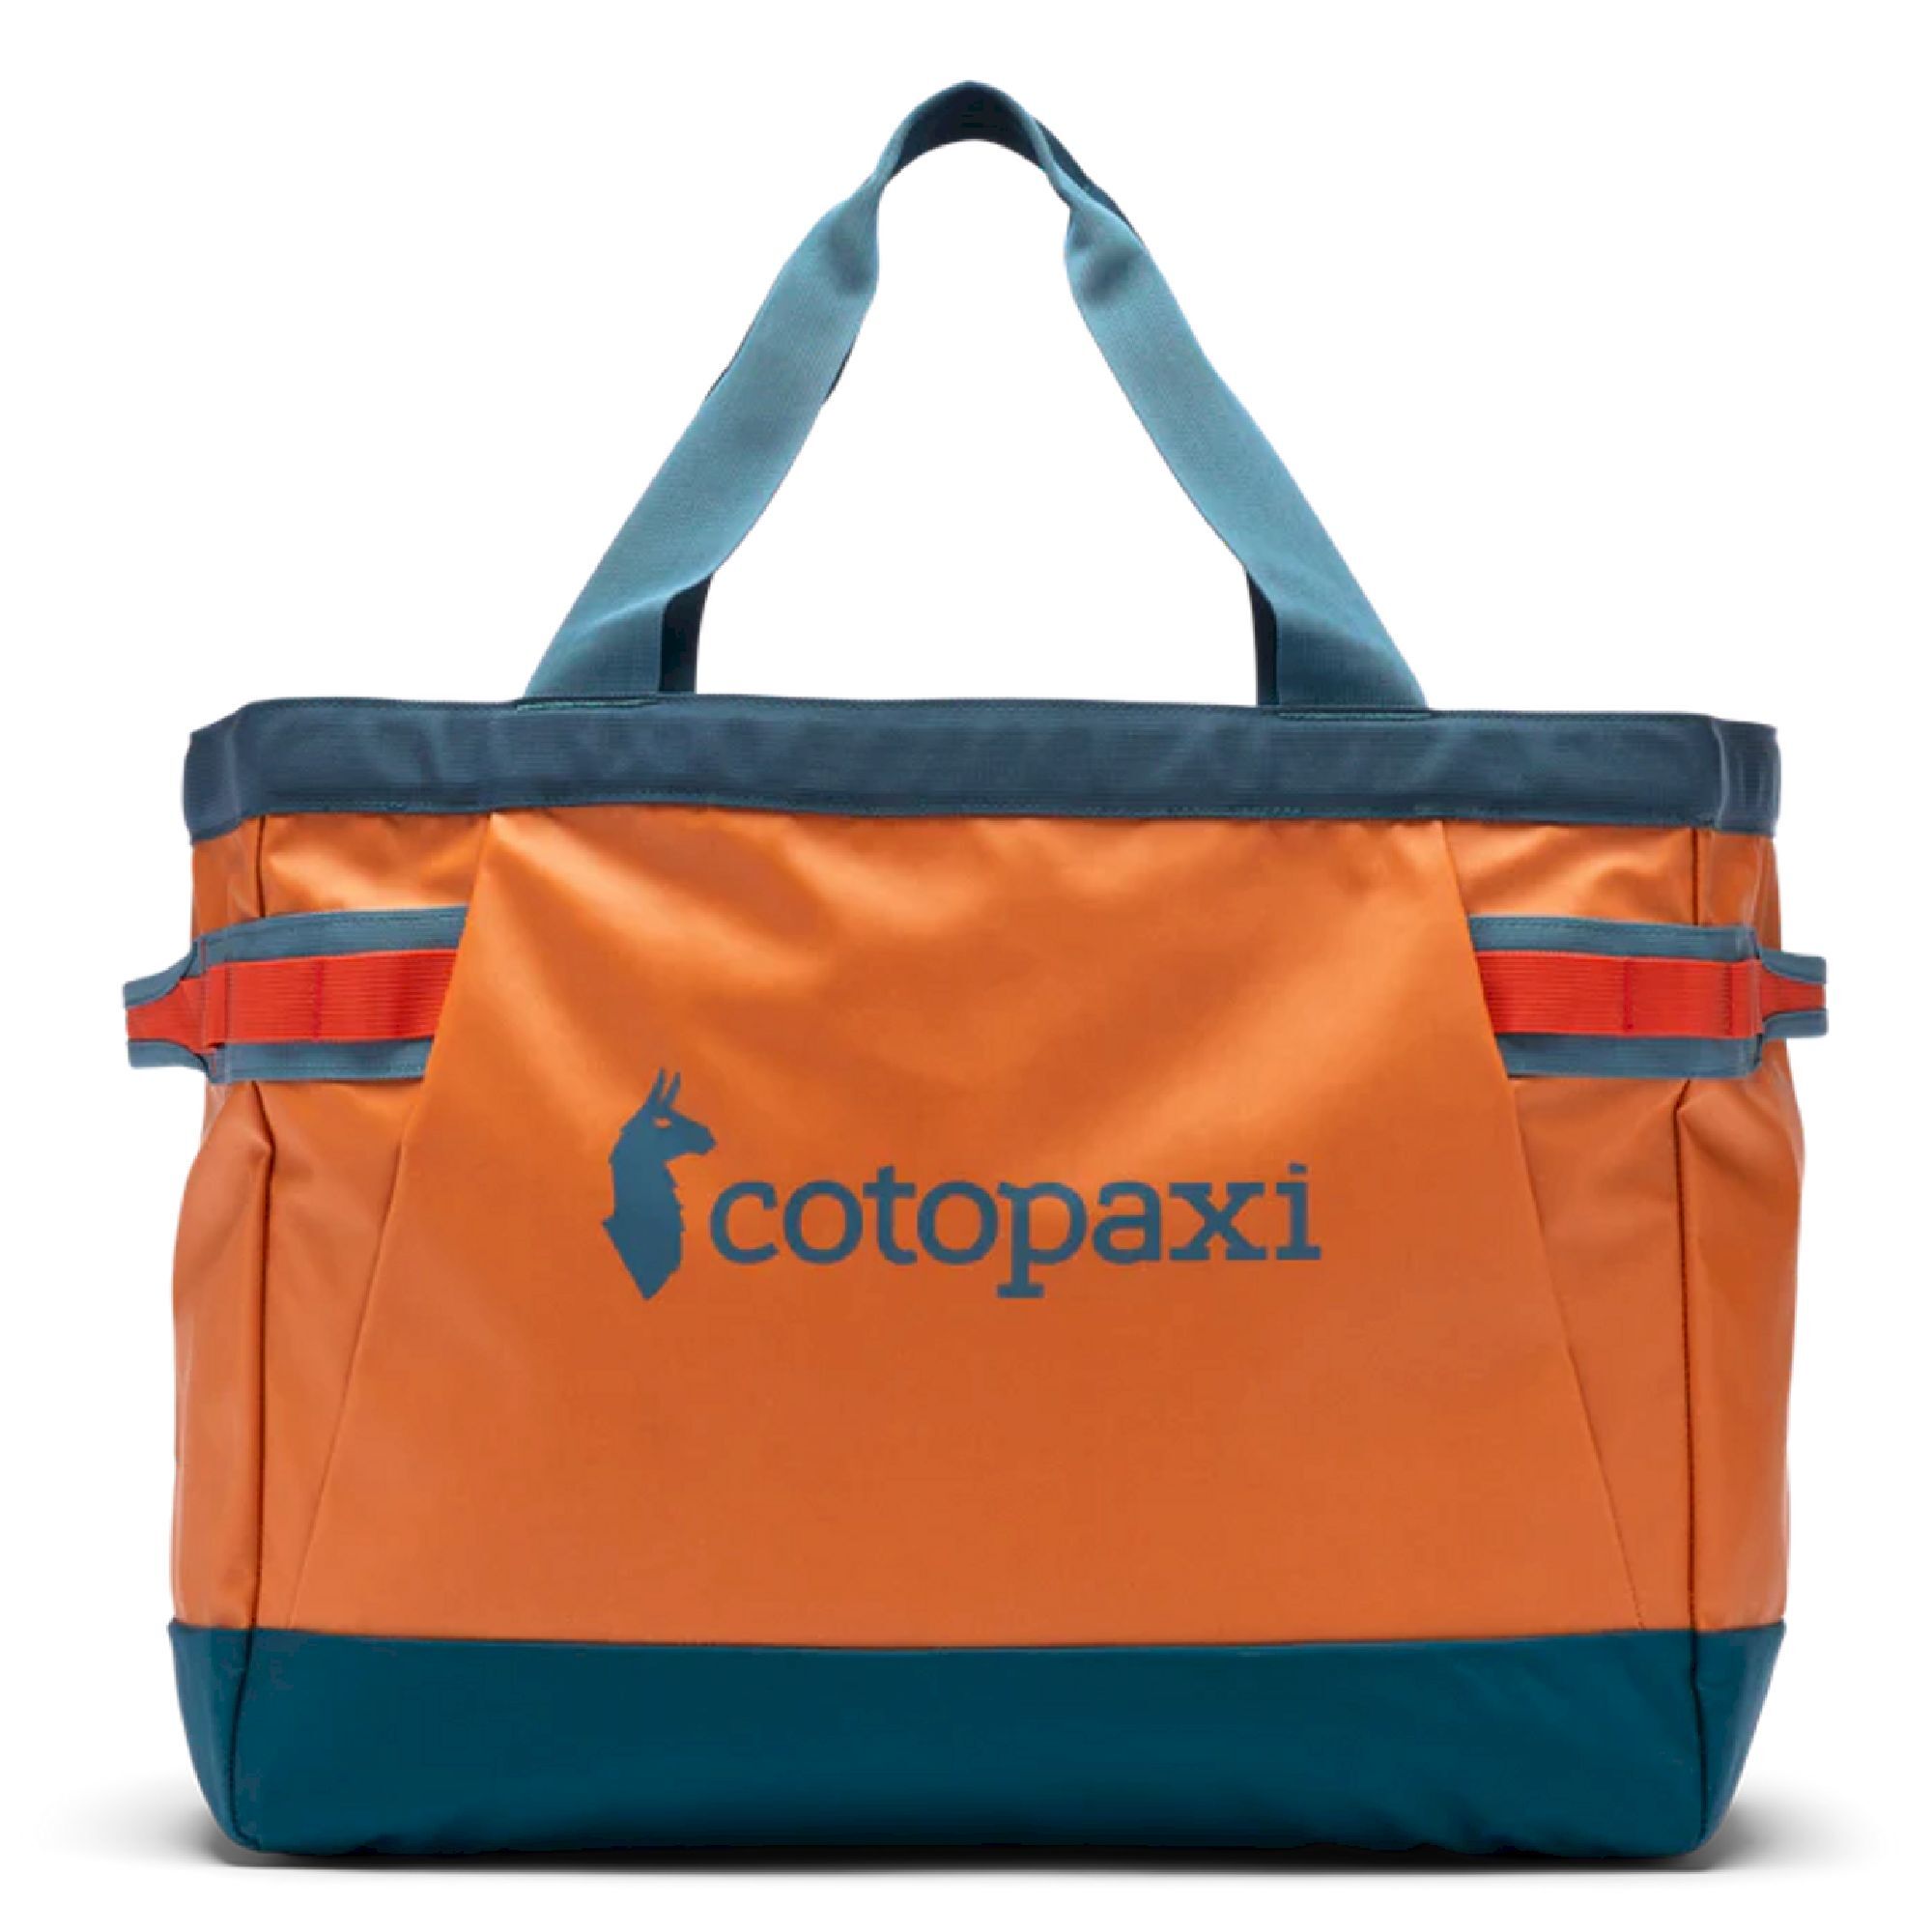 Cotopaxi Allpa 60L Gear Hauler Tote - Travel bag | Hardloop